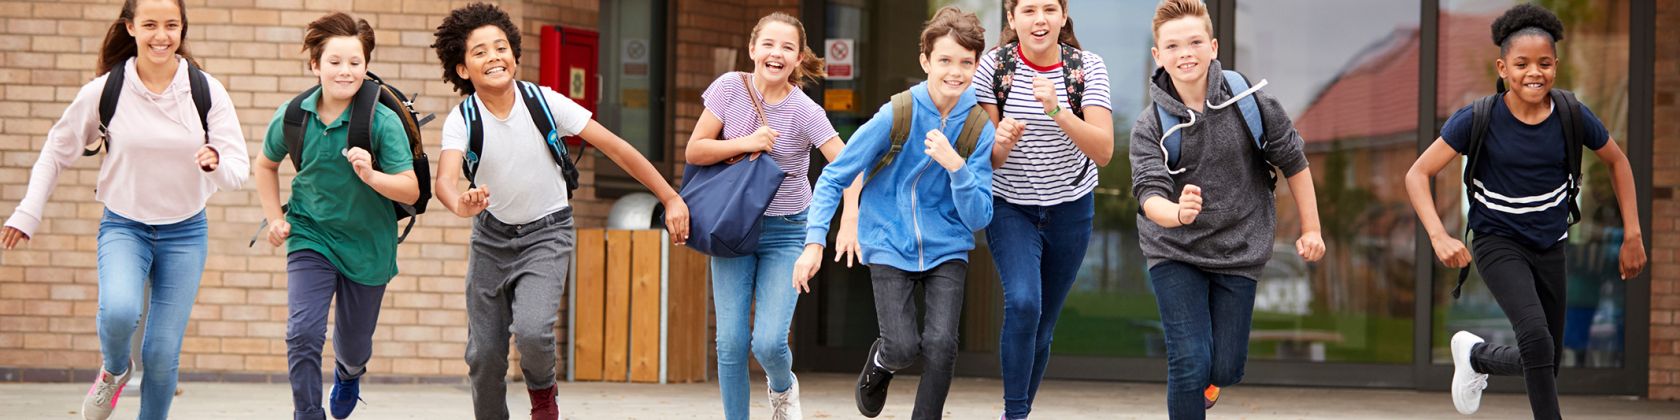 Kinder laufen lachend aus der Schule